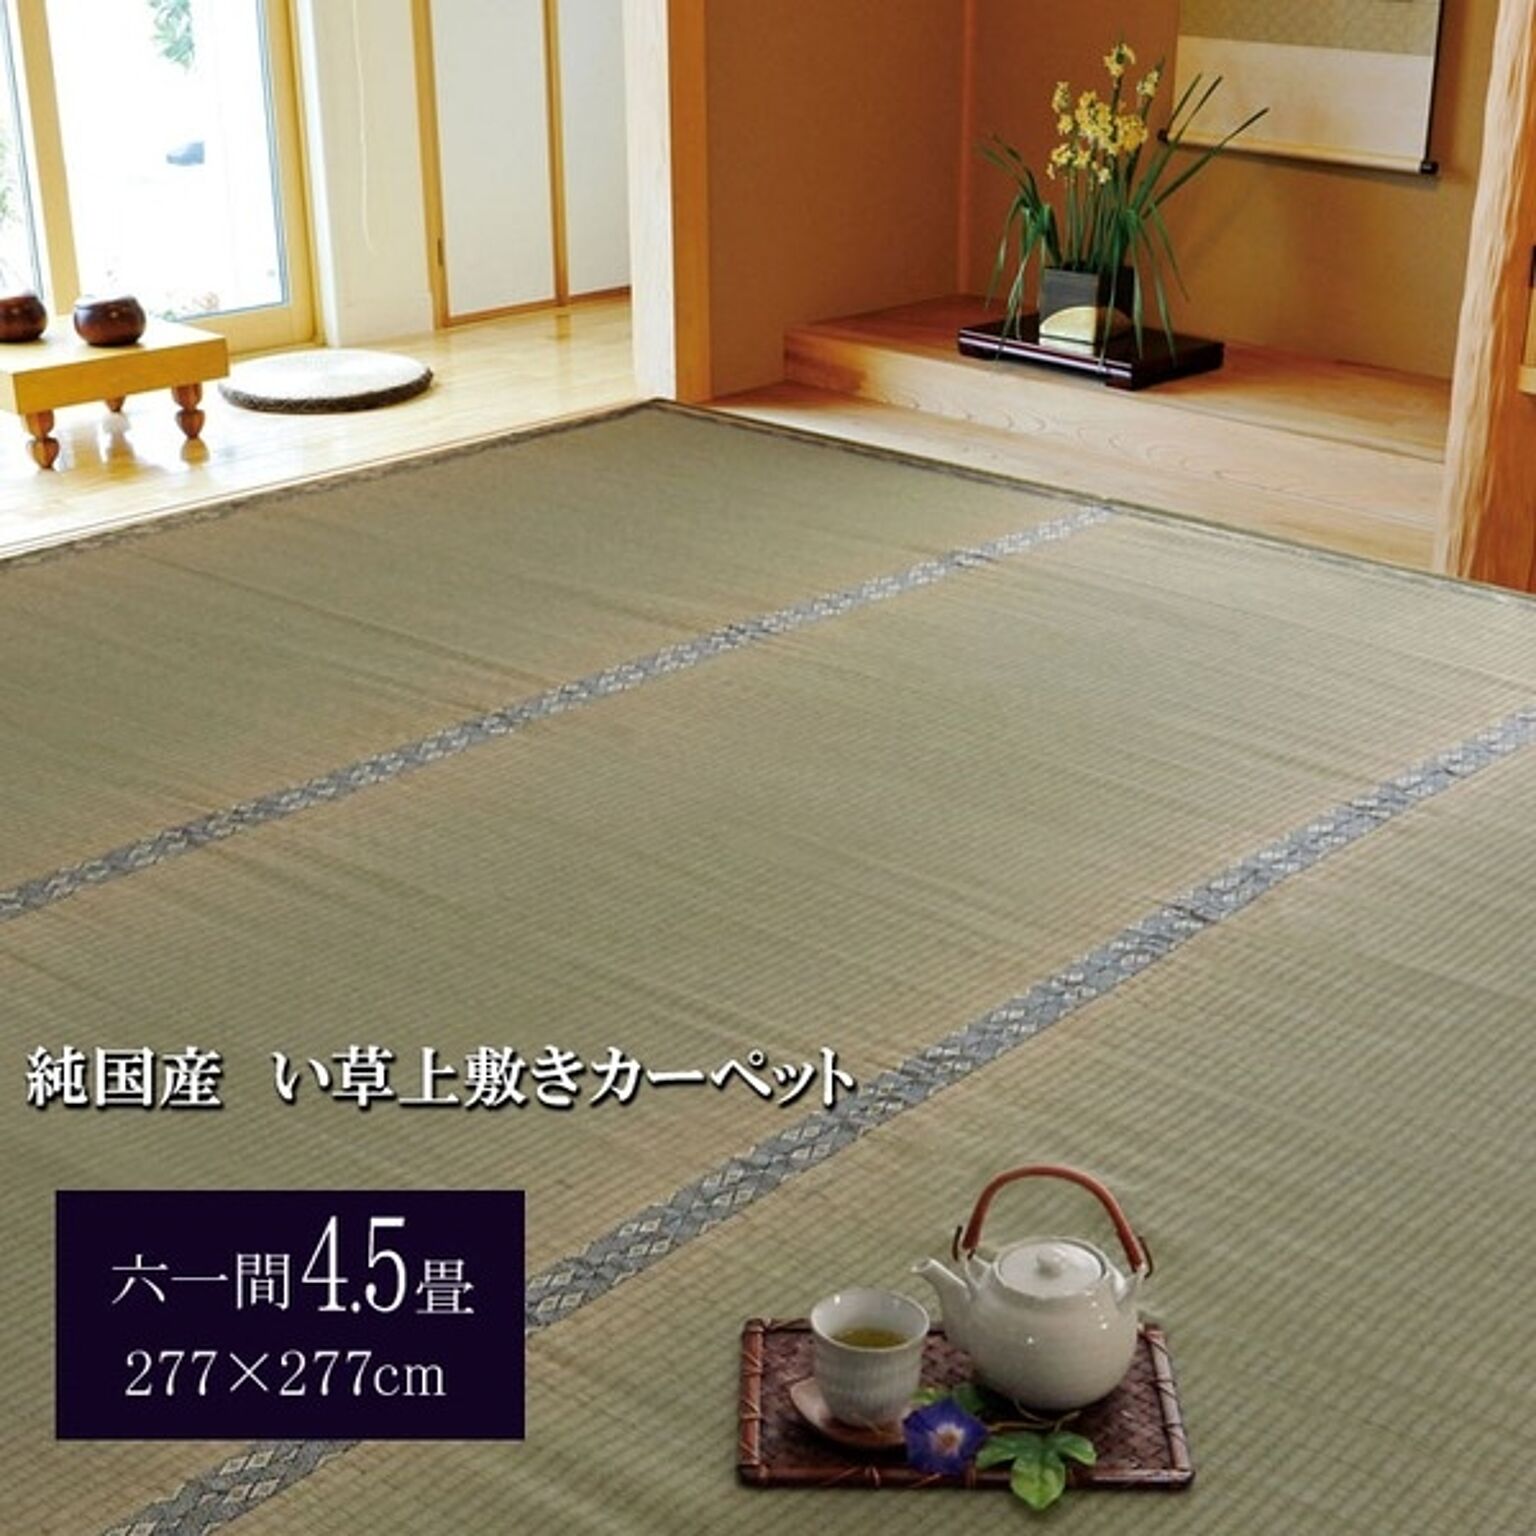 純国産 湯沢 い草上敷 糸引織 六一間4.5畳 約277×277cm